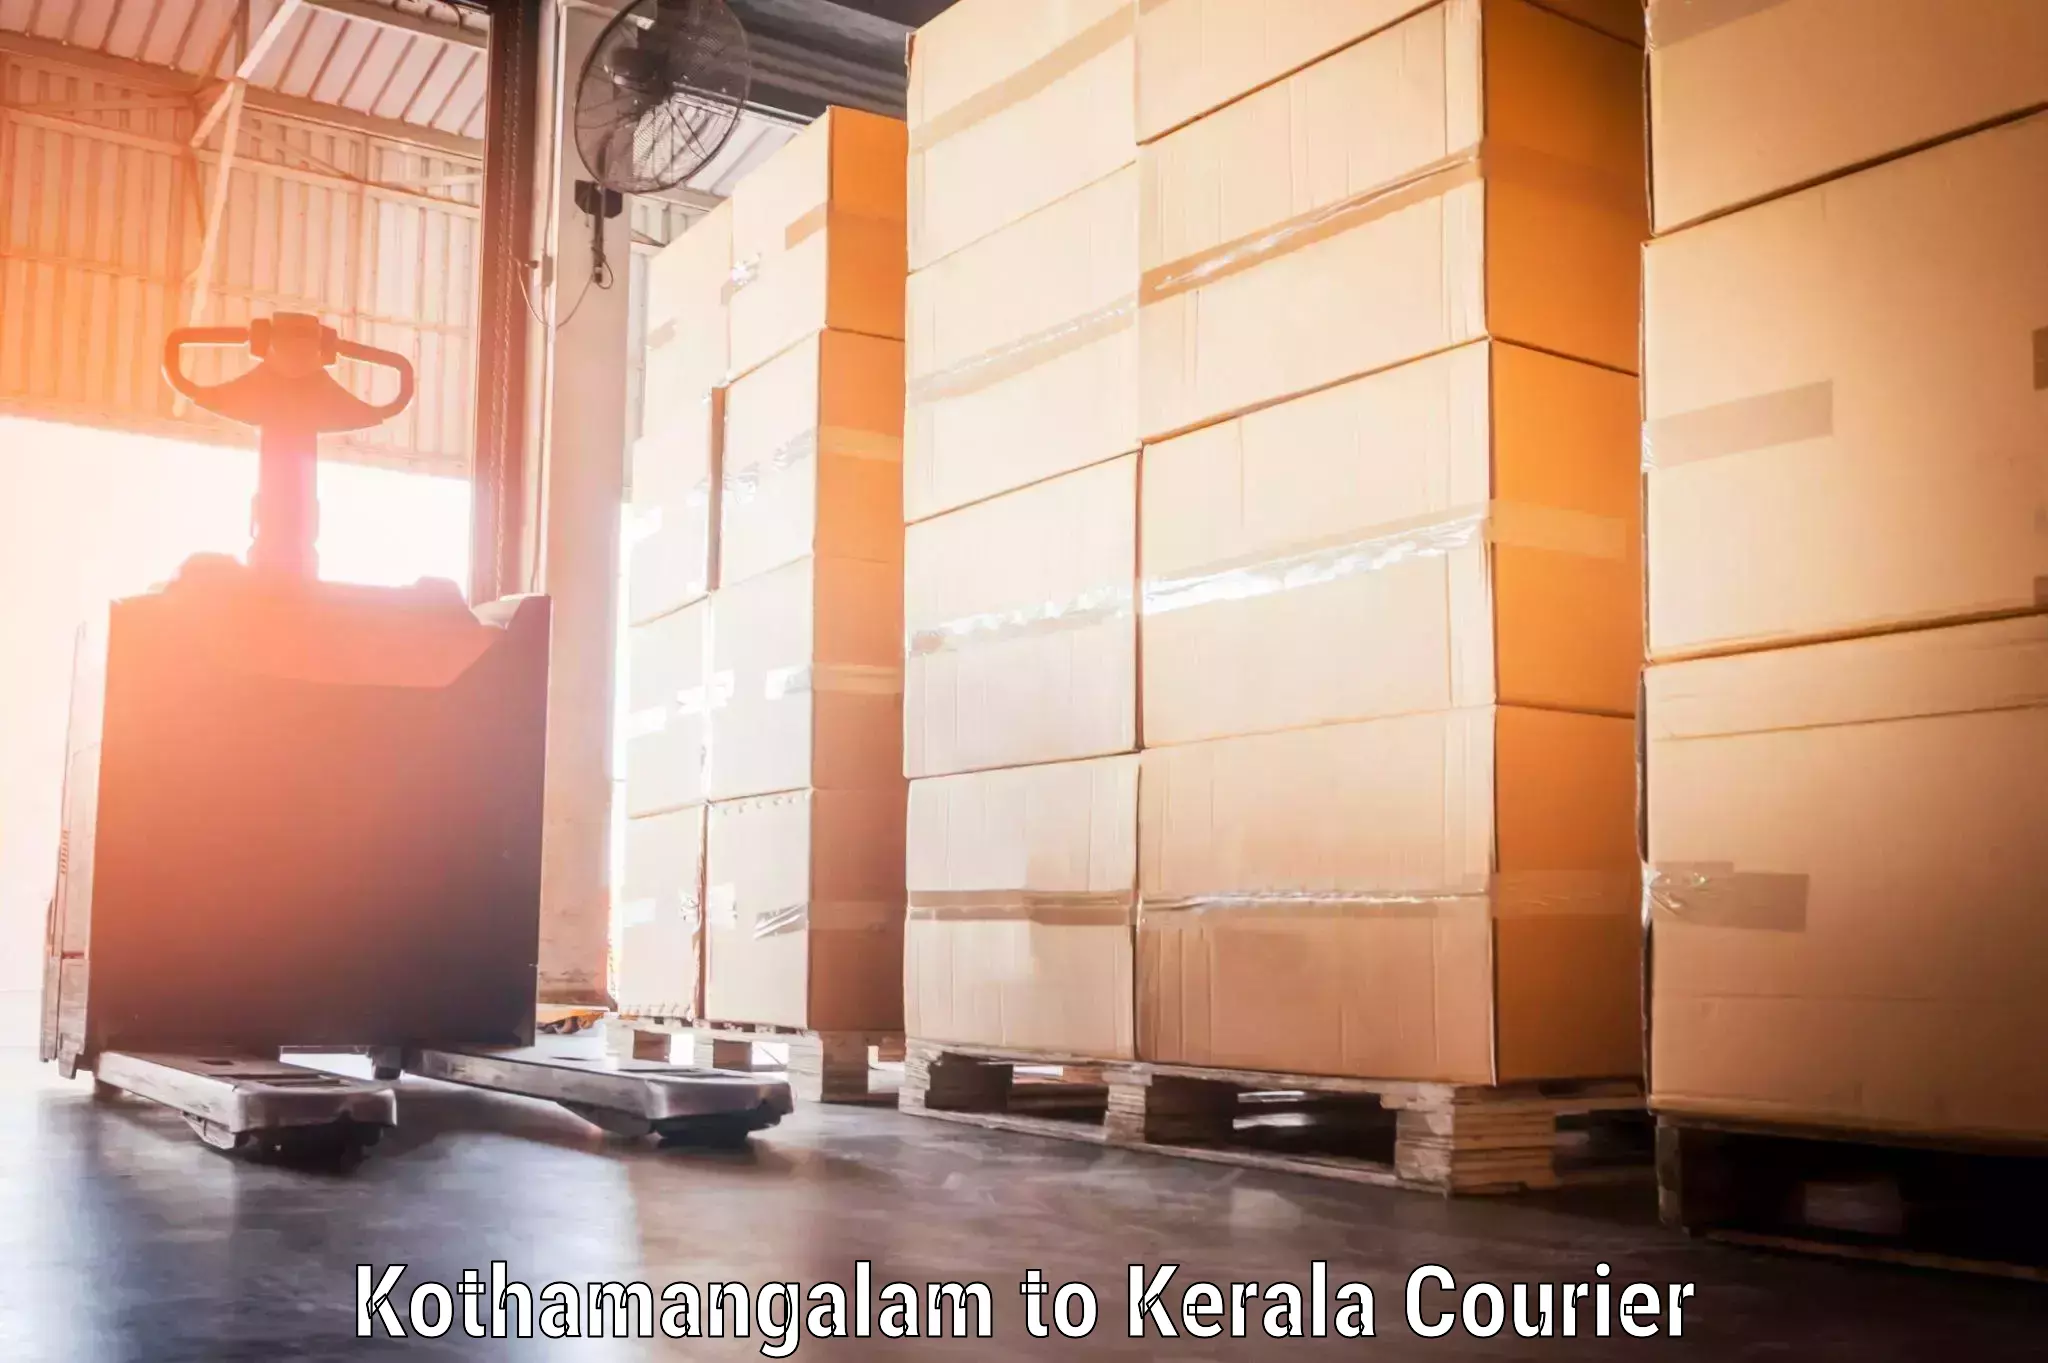 Luggage shipment specialists Kothamangalam to Kerala